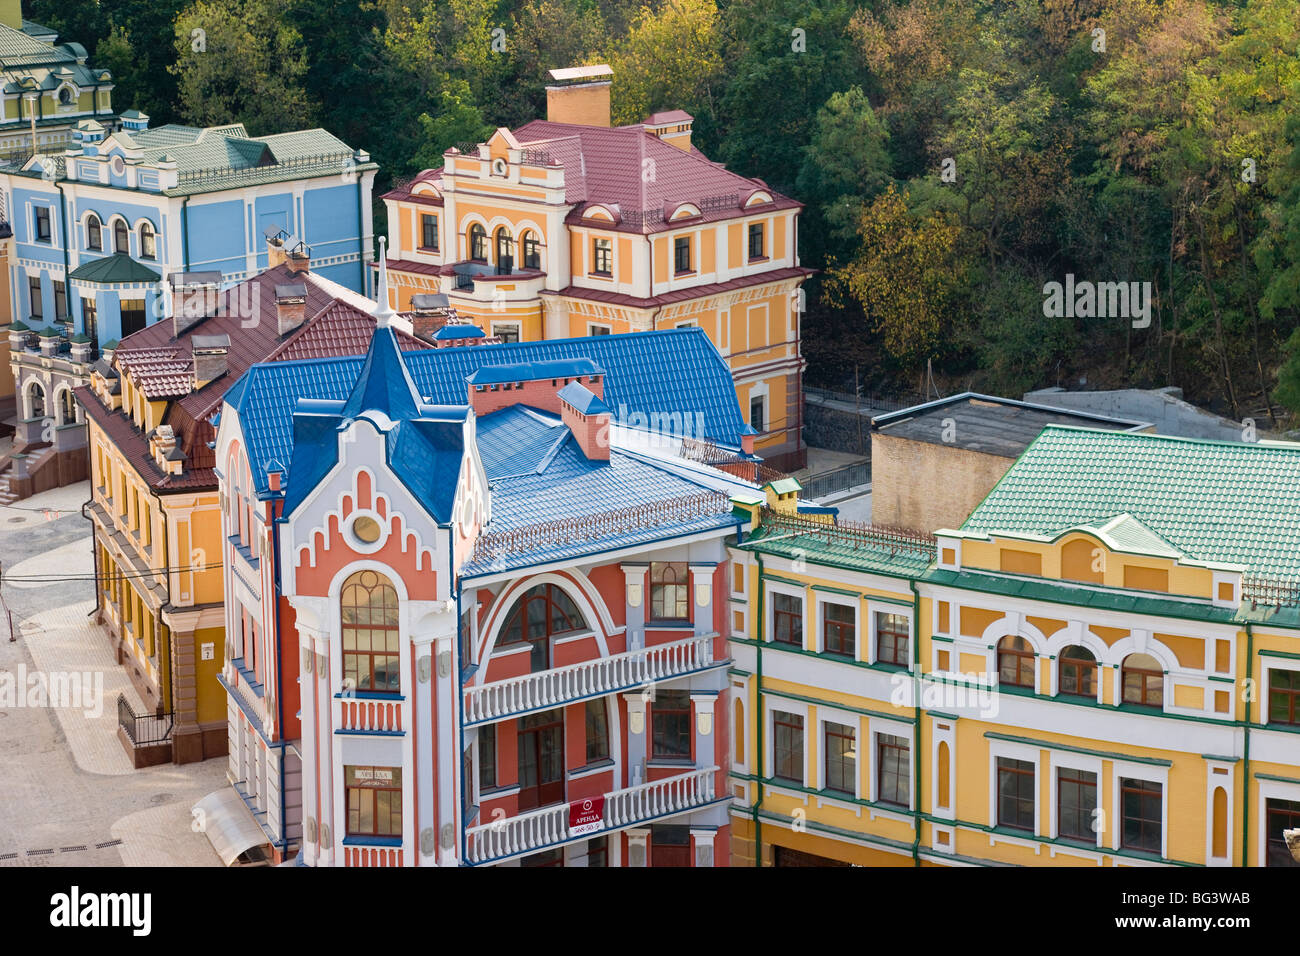 Erhöhten Blick über farbenfrohe Gebäude mit mehrfarbigen Dächer in einem neuen Wohngebiet von Kiew, Ukraine, Europa Stockfoto